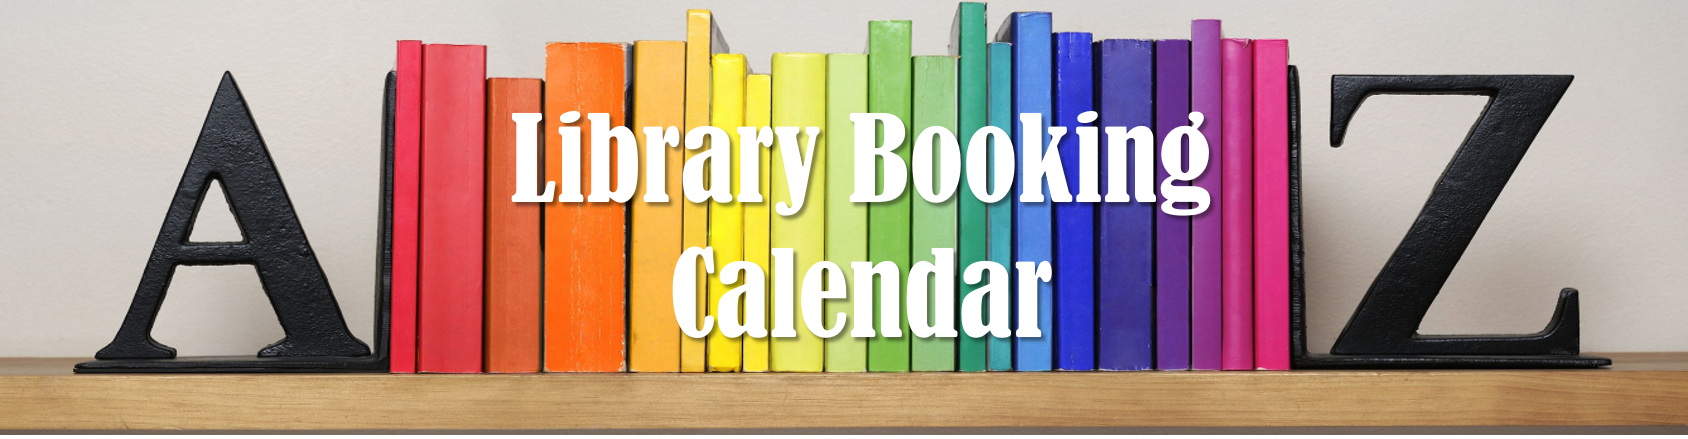 Library Booking Calendar